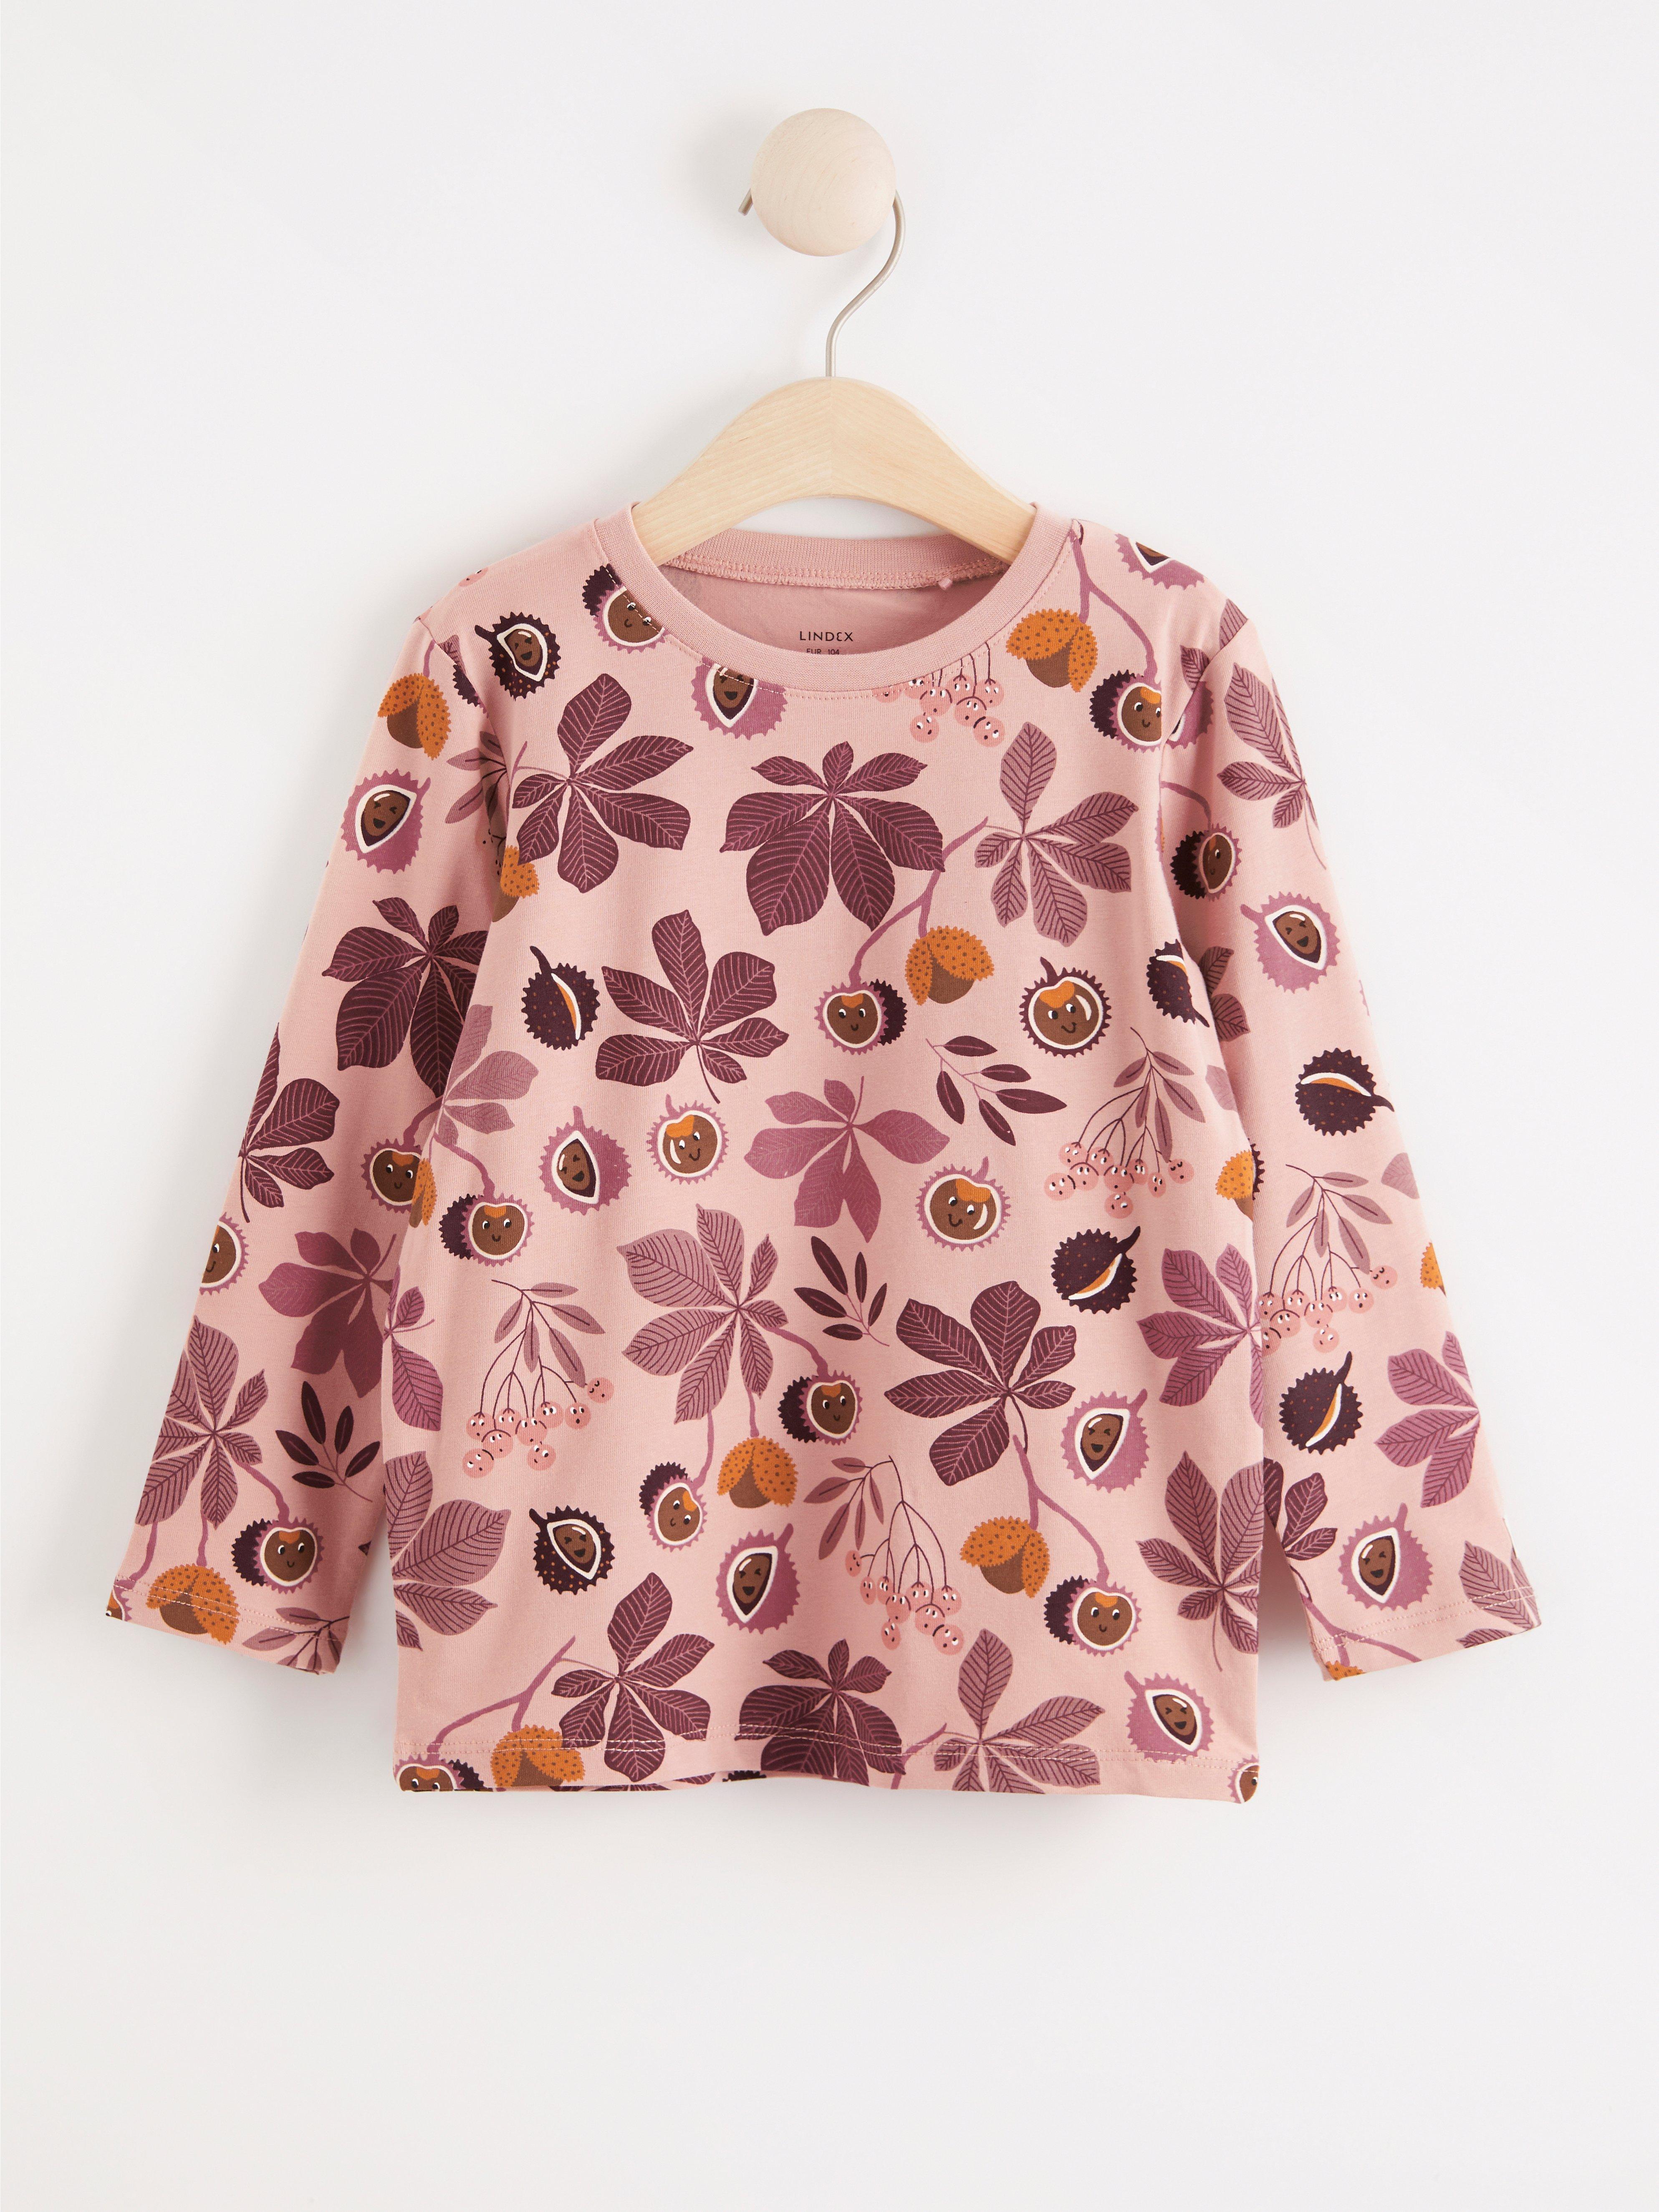 petals kidswear online